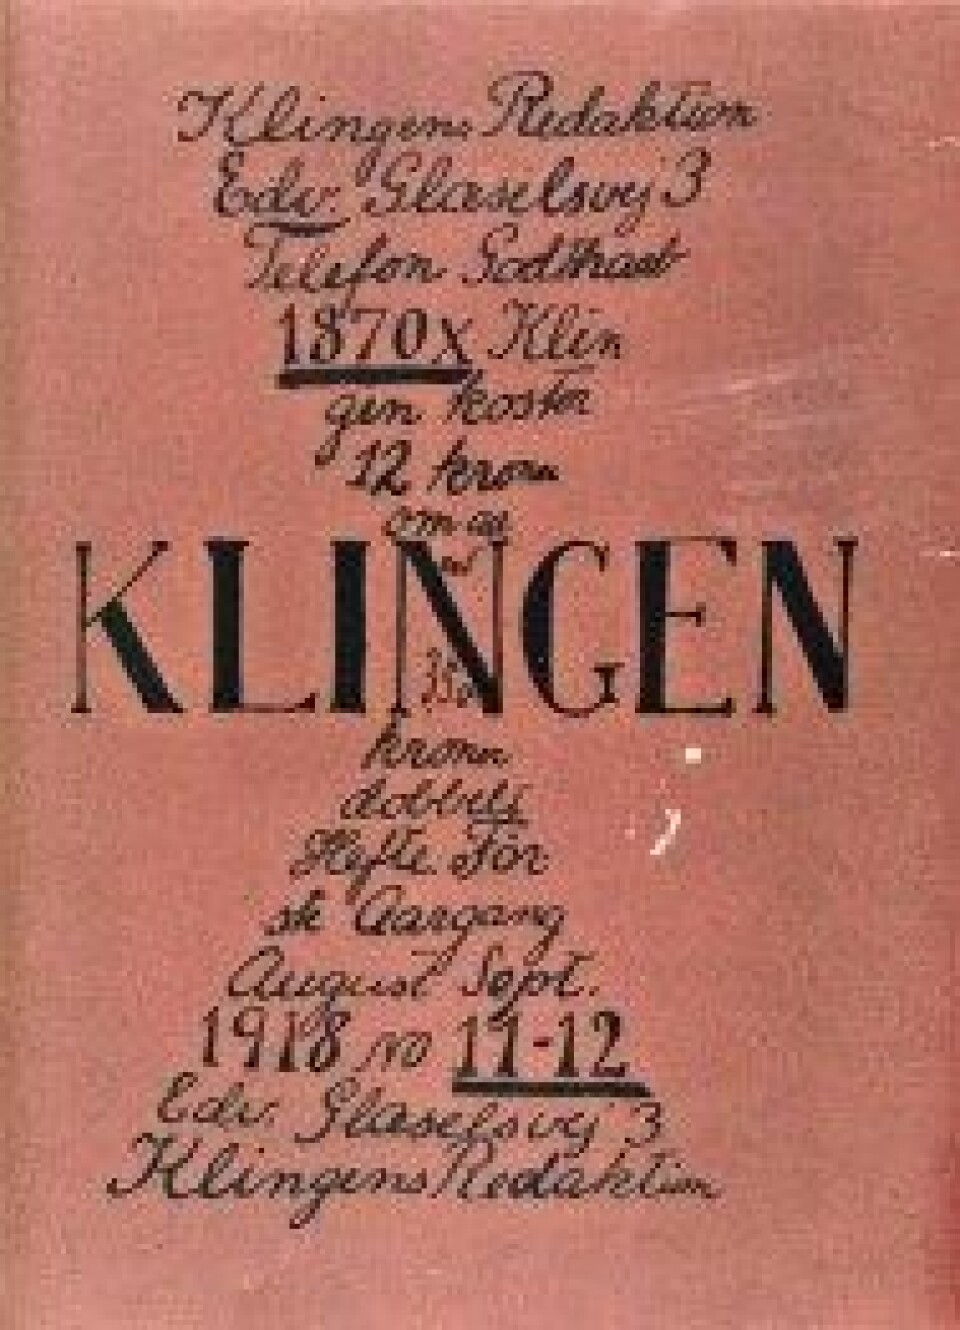 Tidsskriftet Klingen (1917-22) regnes som modernismens sentrale gjennombruddsorgan i Danmark. Her et av numrene der PH bidrar. (Faksimile, Det Kongelige Biblioteks nettside)